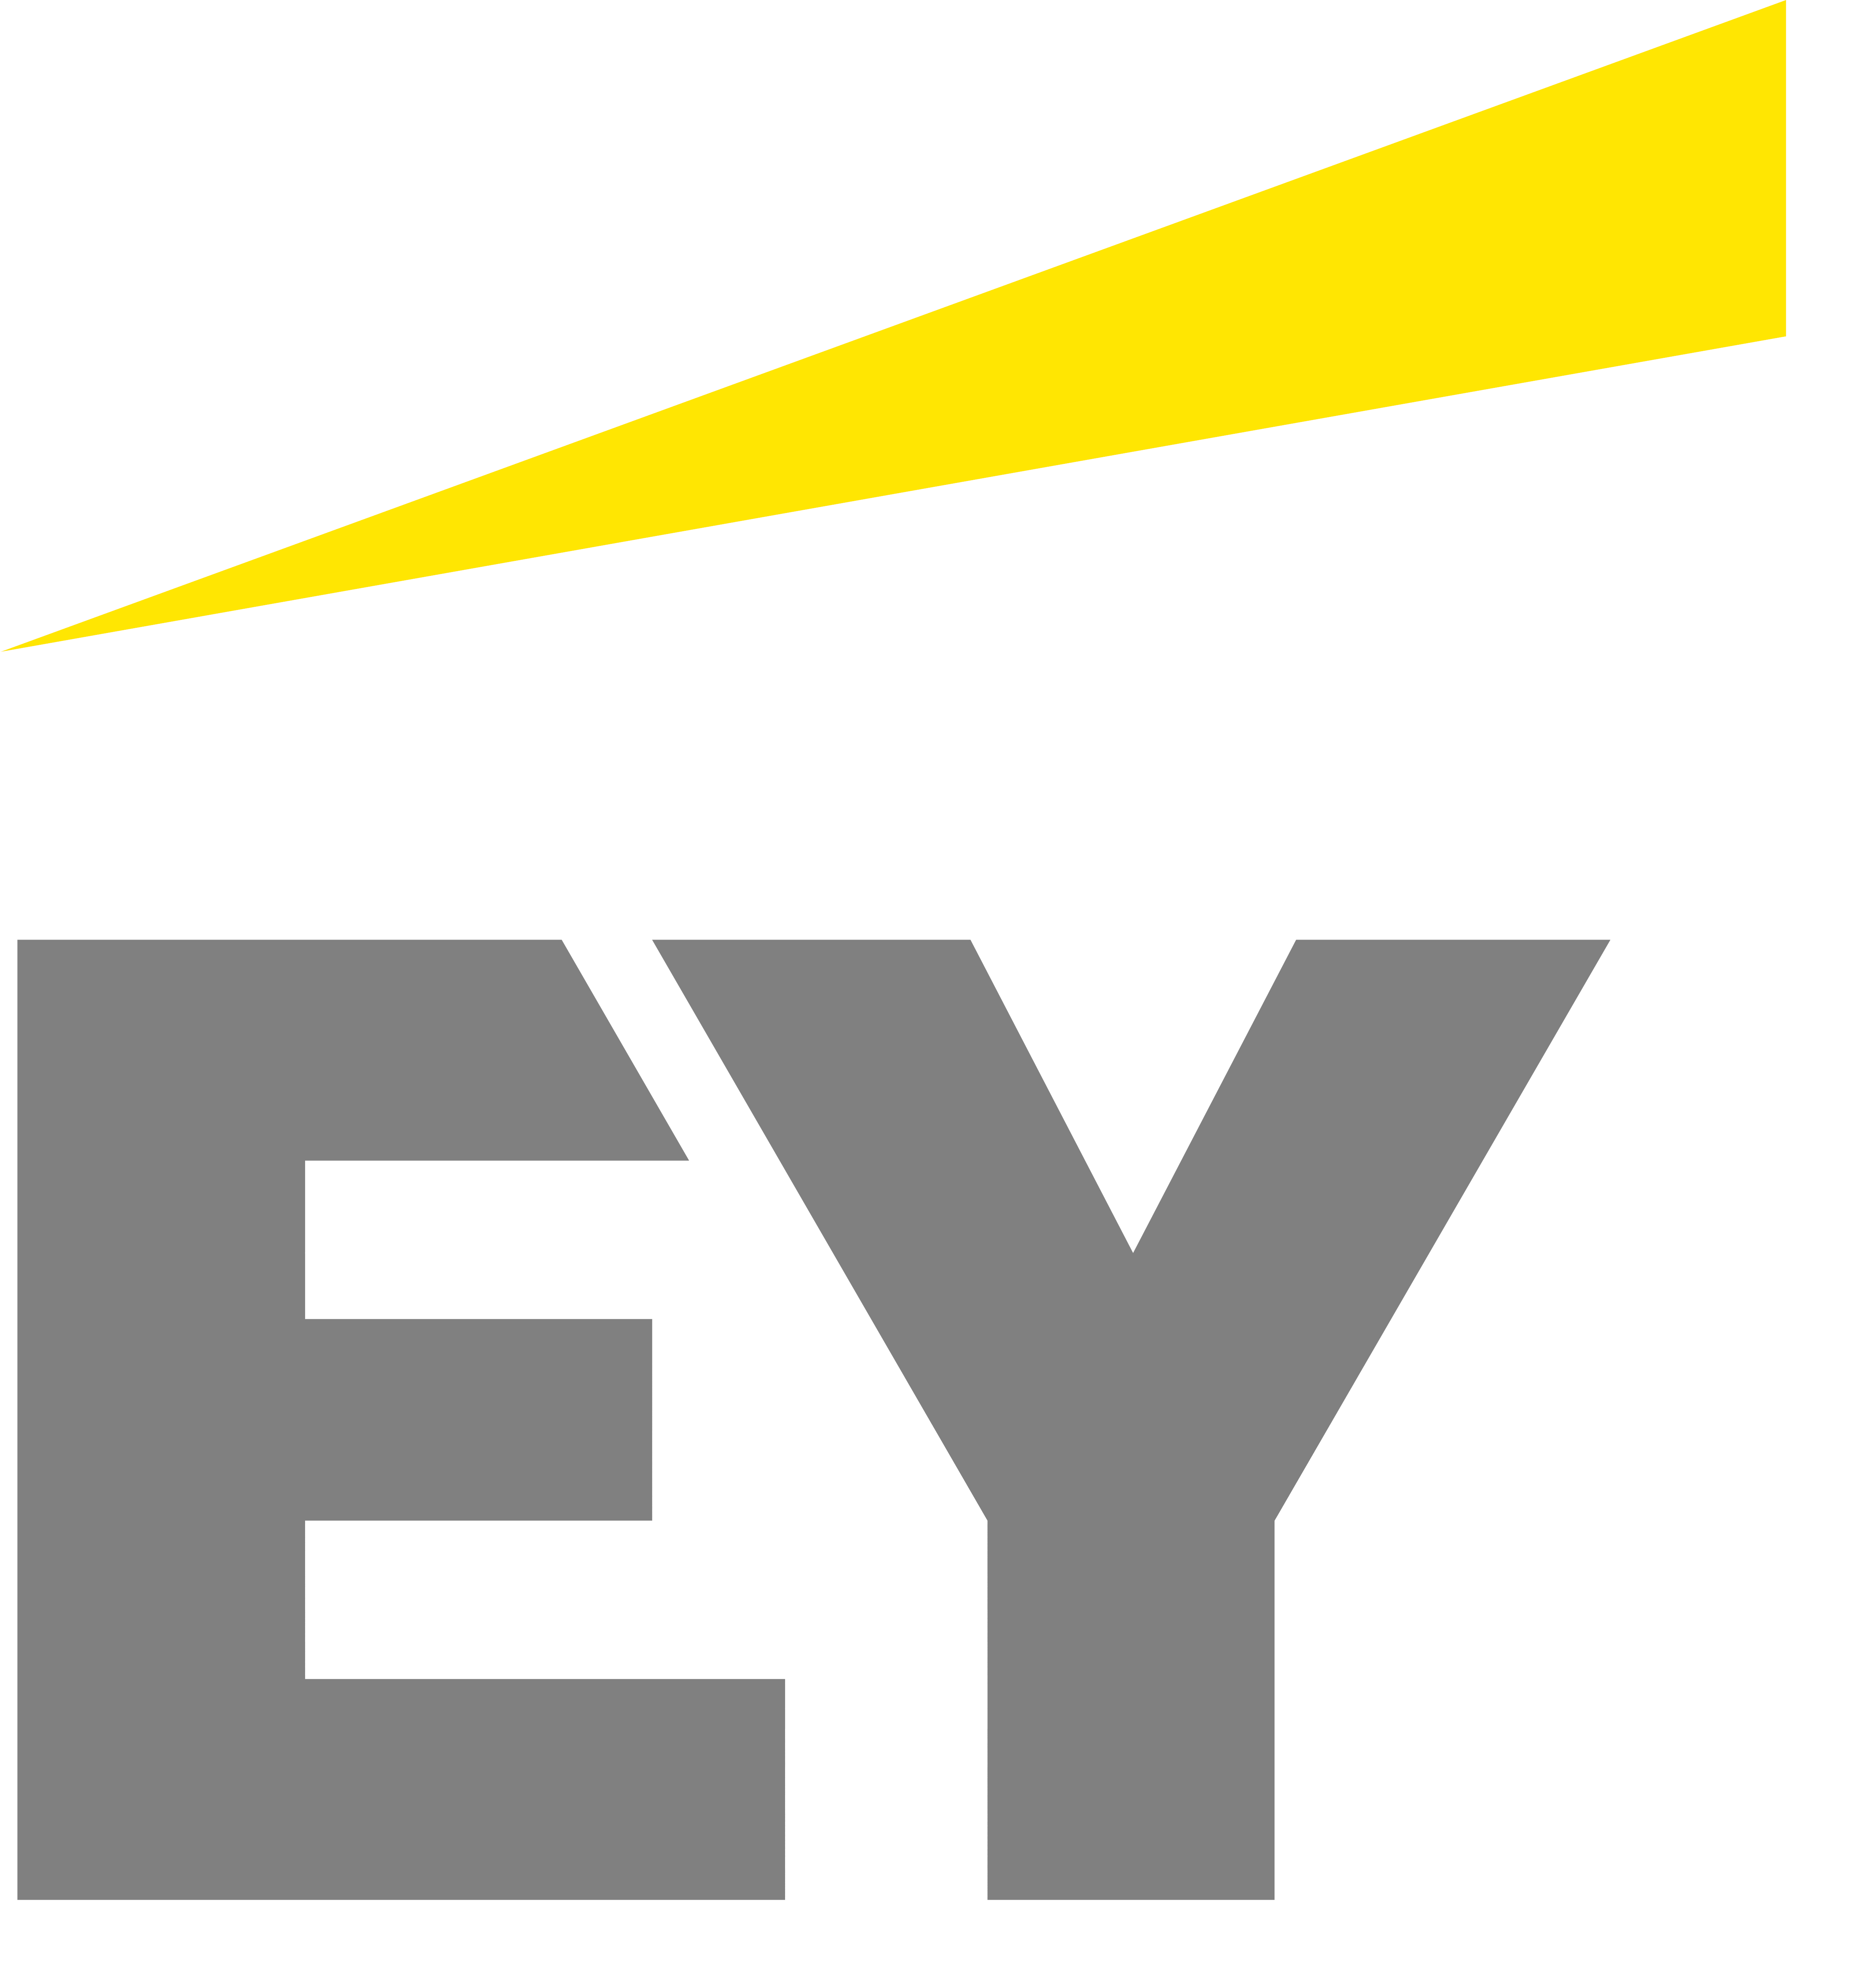 EY – Logos Download